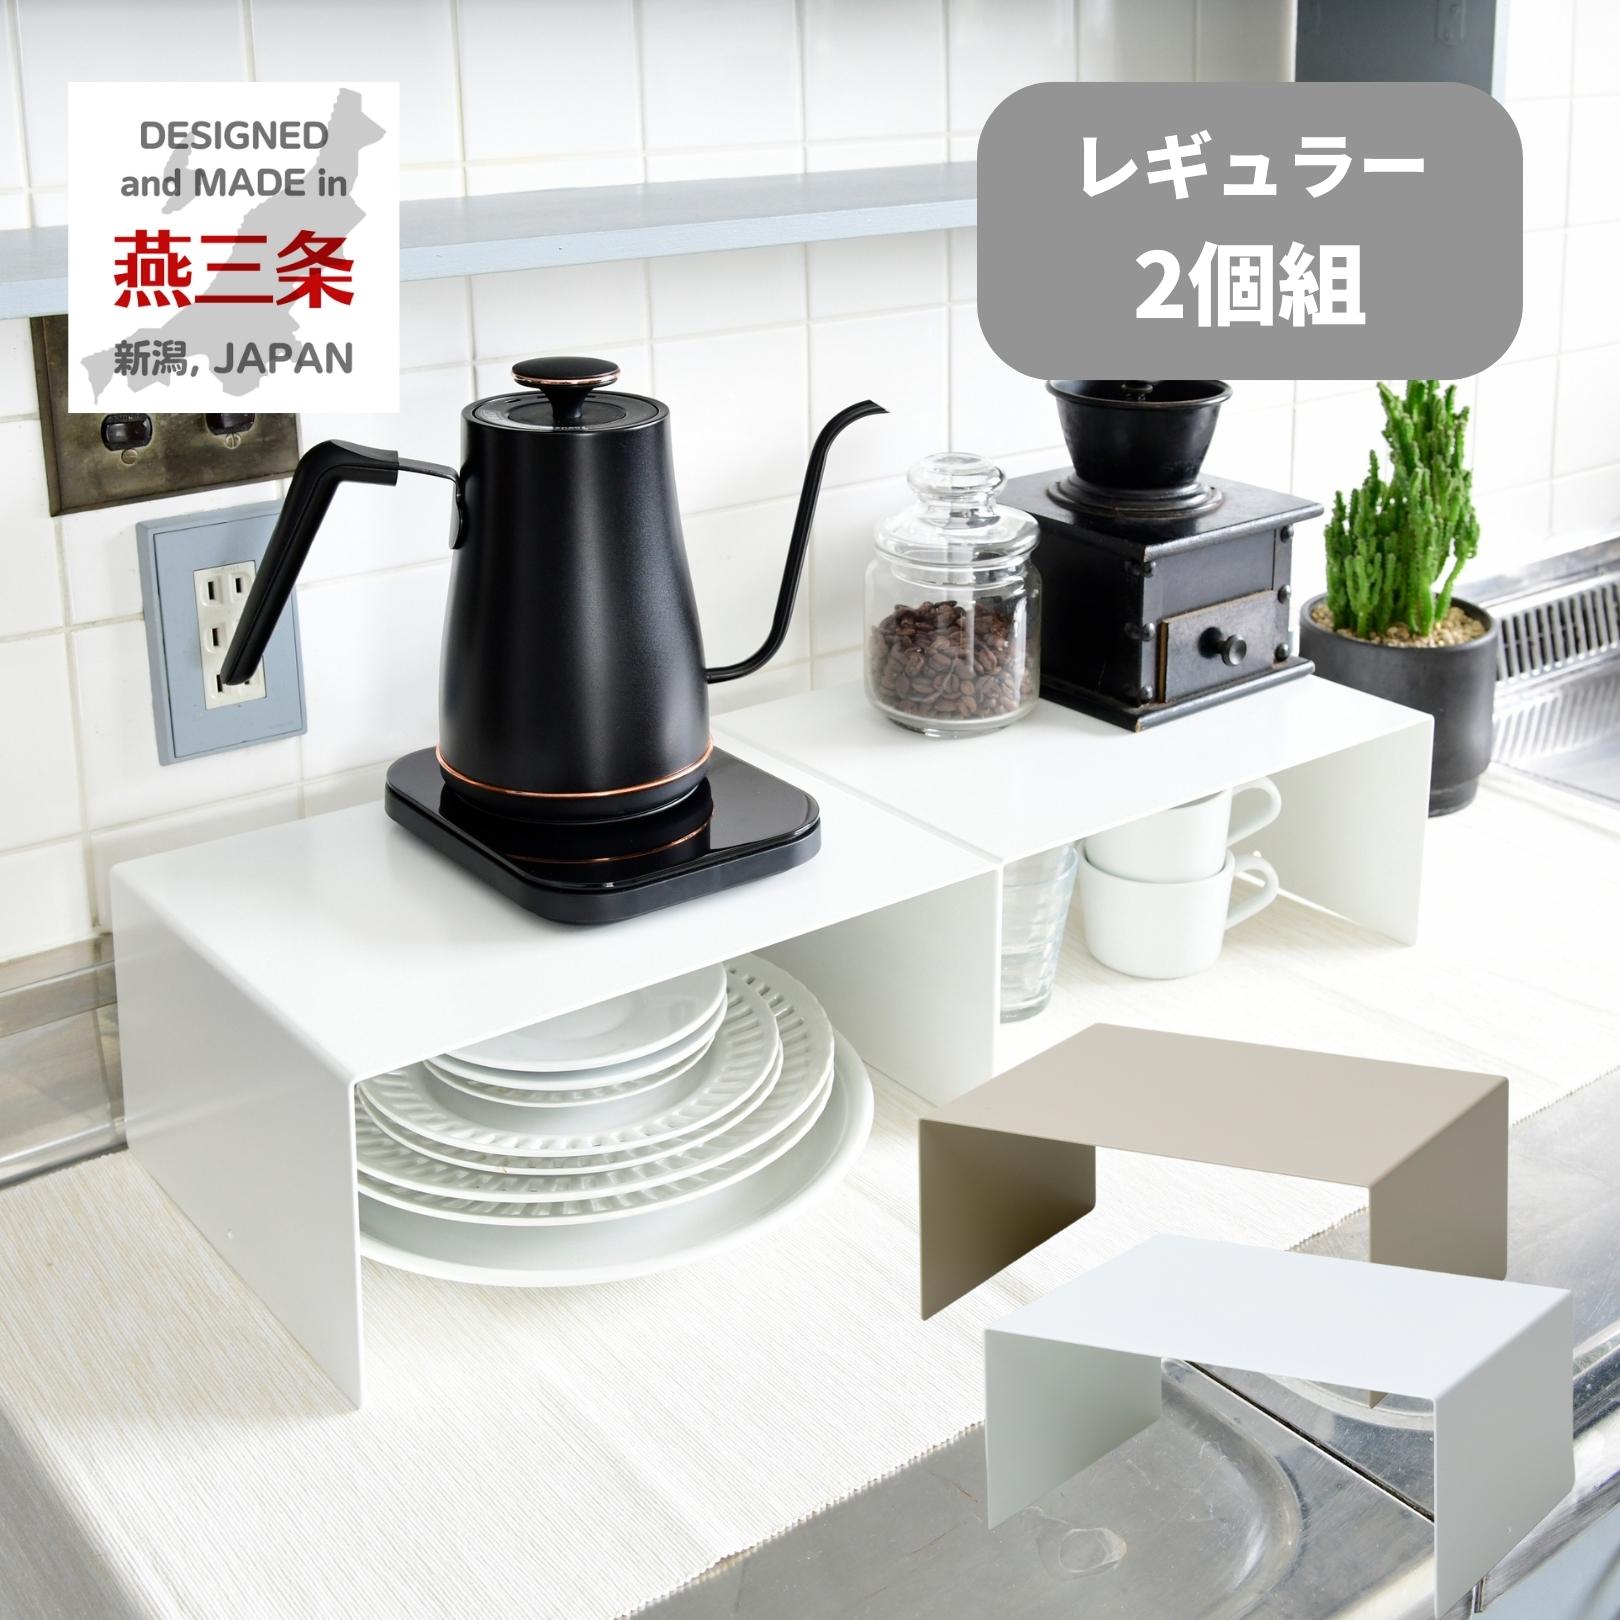 頑丈 コの字ラック 2個組 日本製 燕三条 キッチンすっきりラック ビーワーススタイル